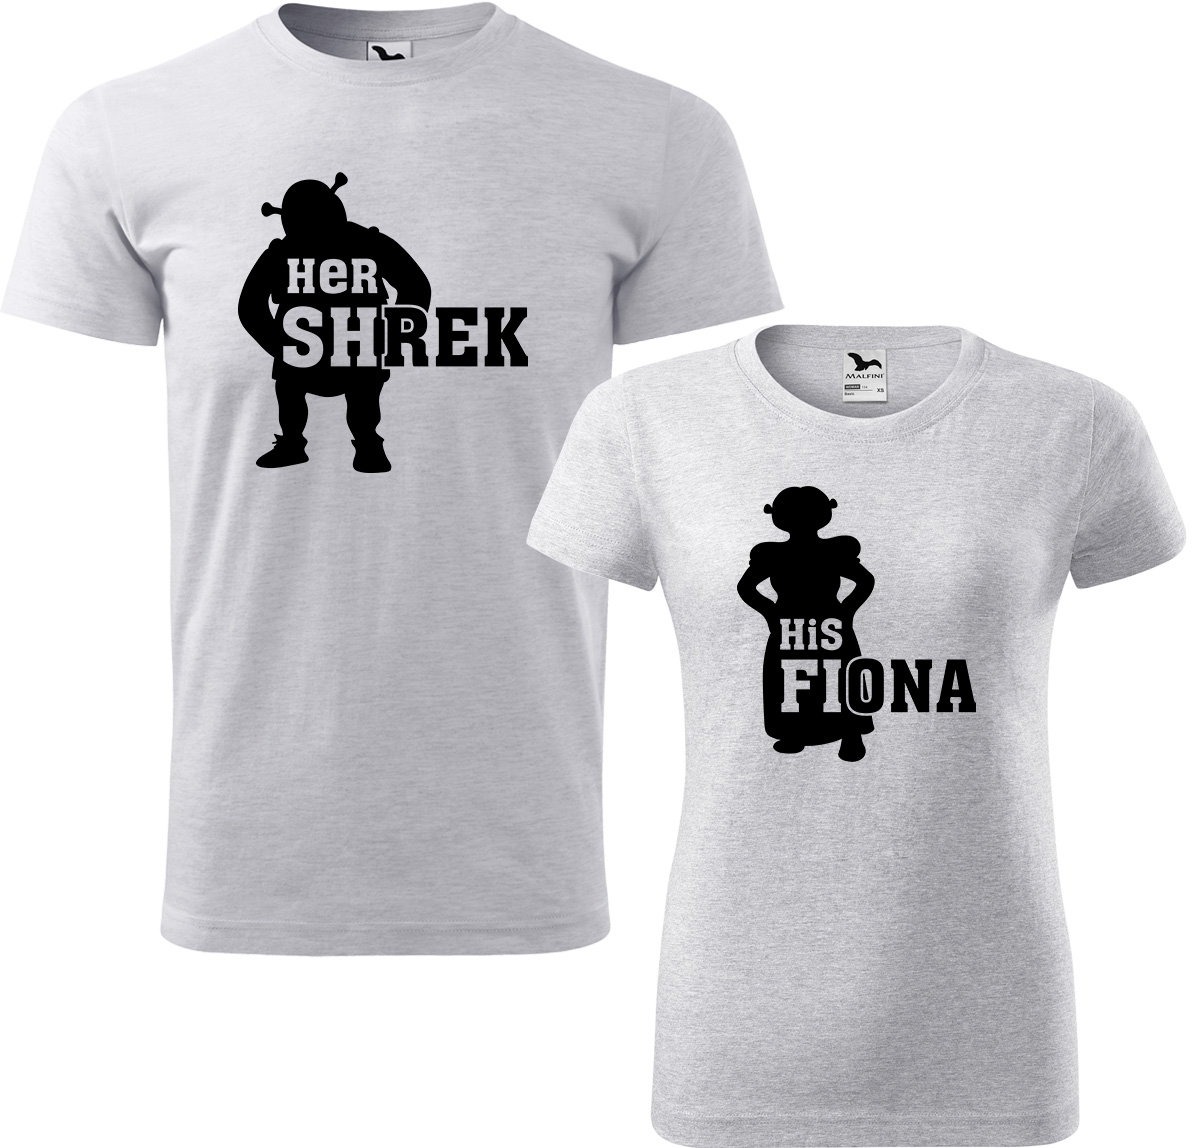 Trička pro páry - Shrek a Fiona Barva: Světle šedý melír (03), Velikost dámské tričko: XL, Velikost pánské tričko: XL